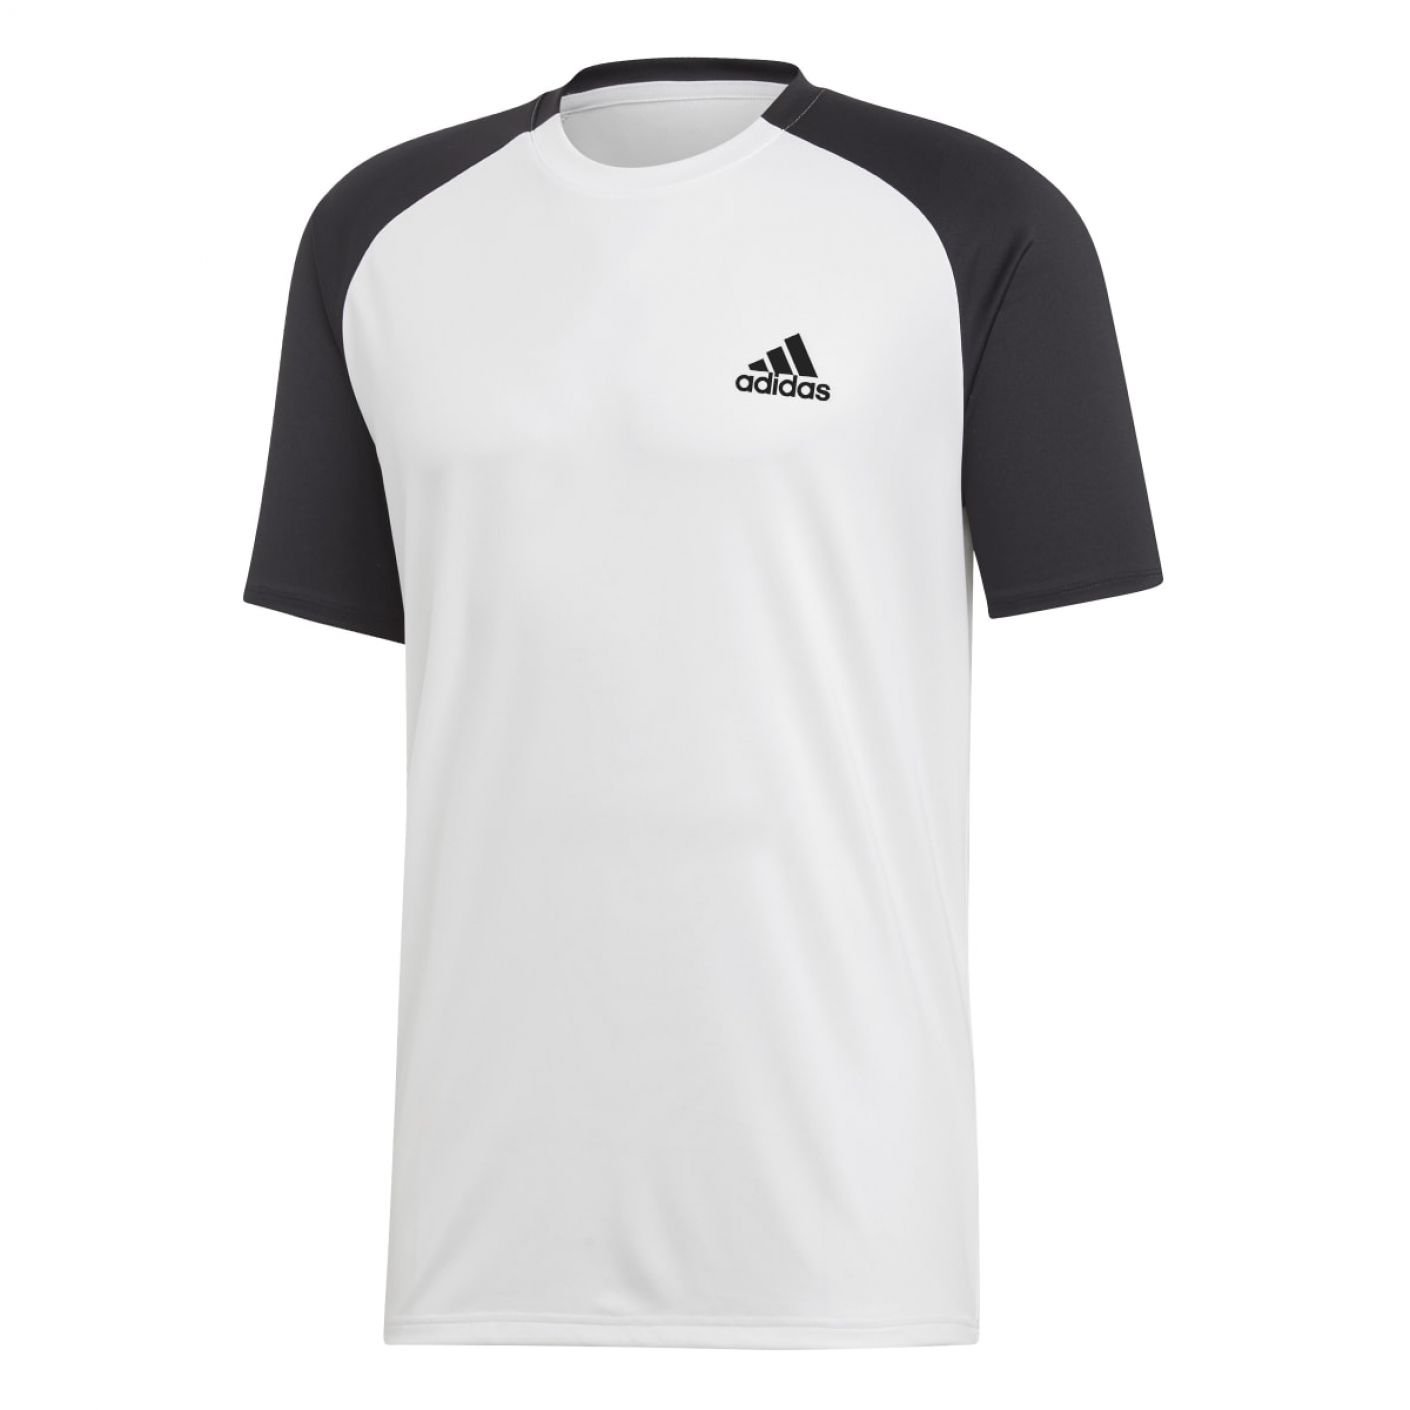 Adidas T-shirt Club